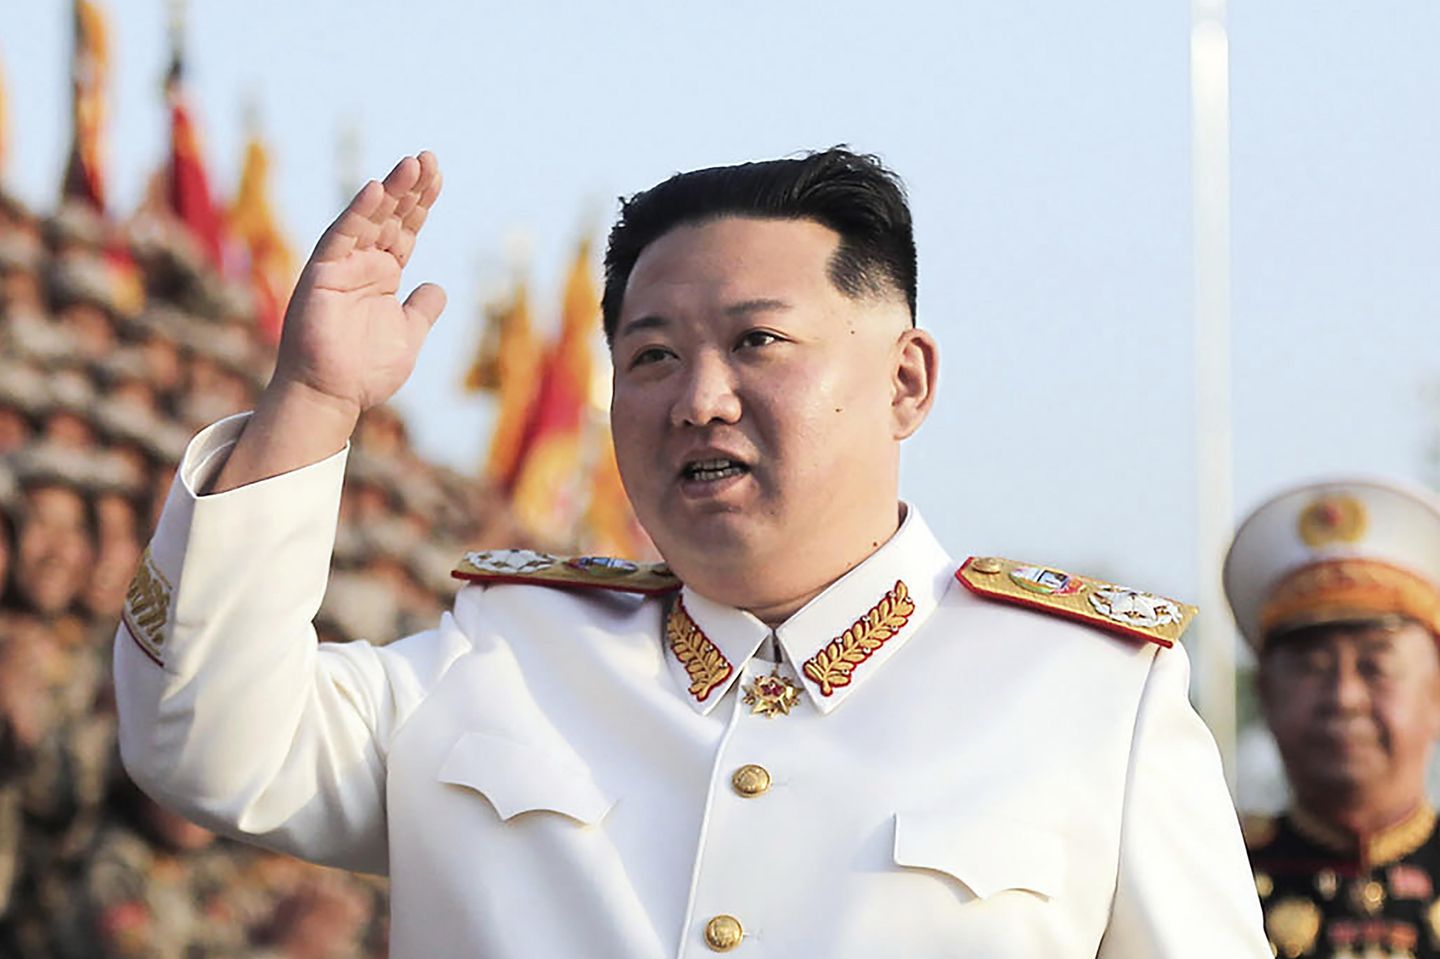 Kim, Kuzey Kore'nin nükleer silahları 'önleyici olarak' kullanabileceği konusunda uyardı